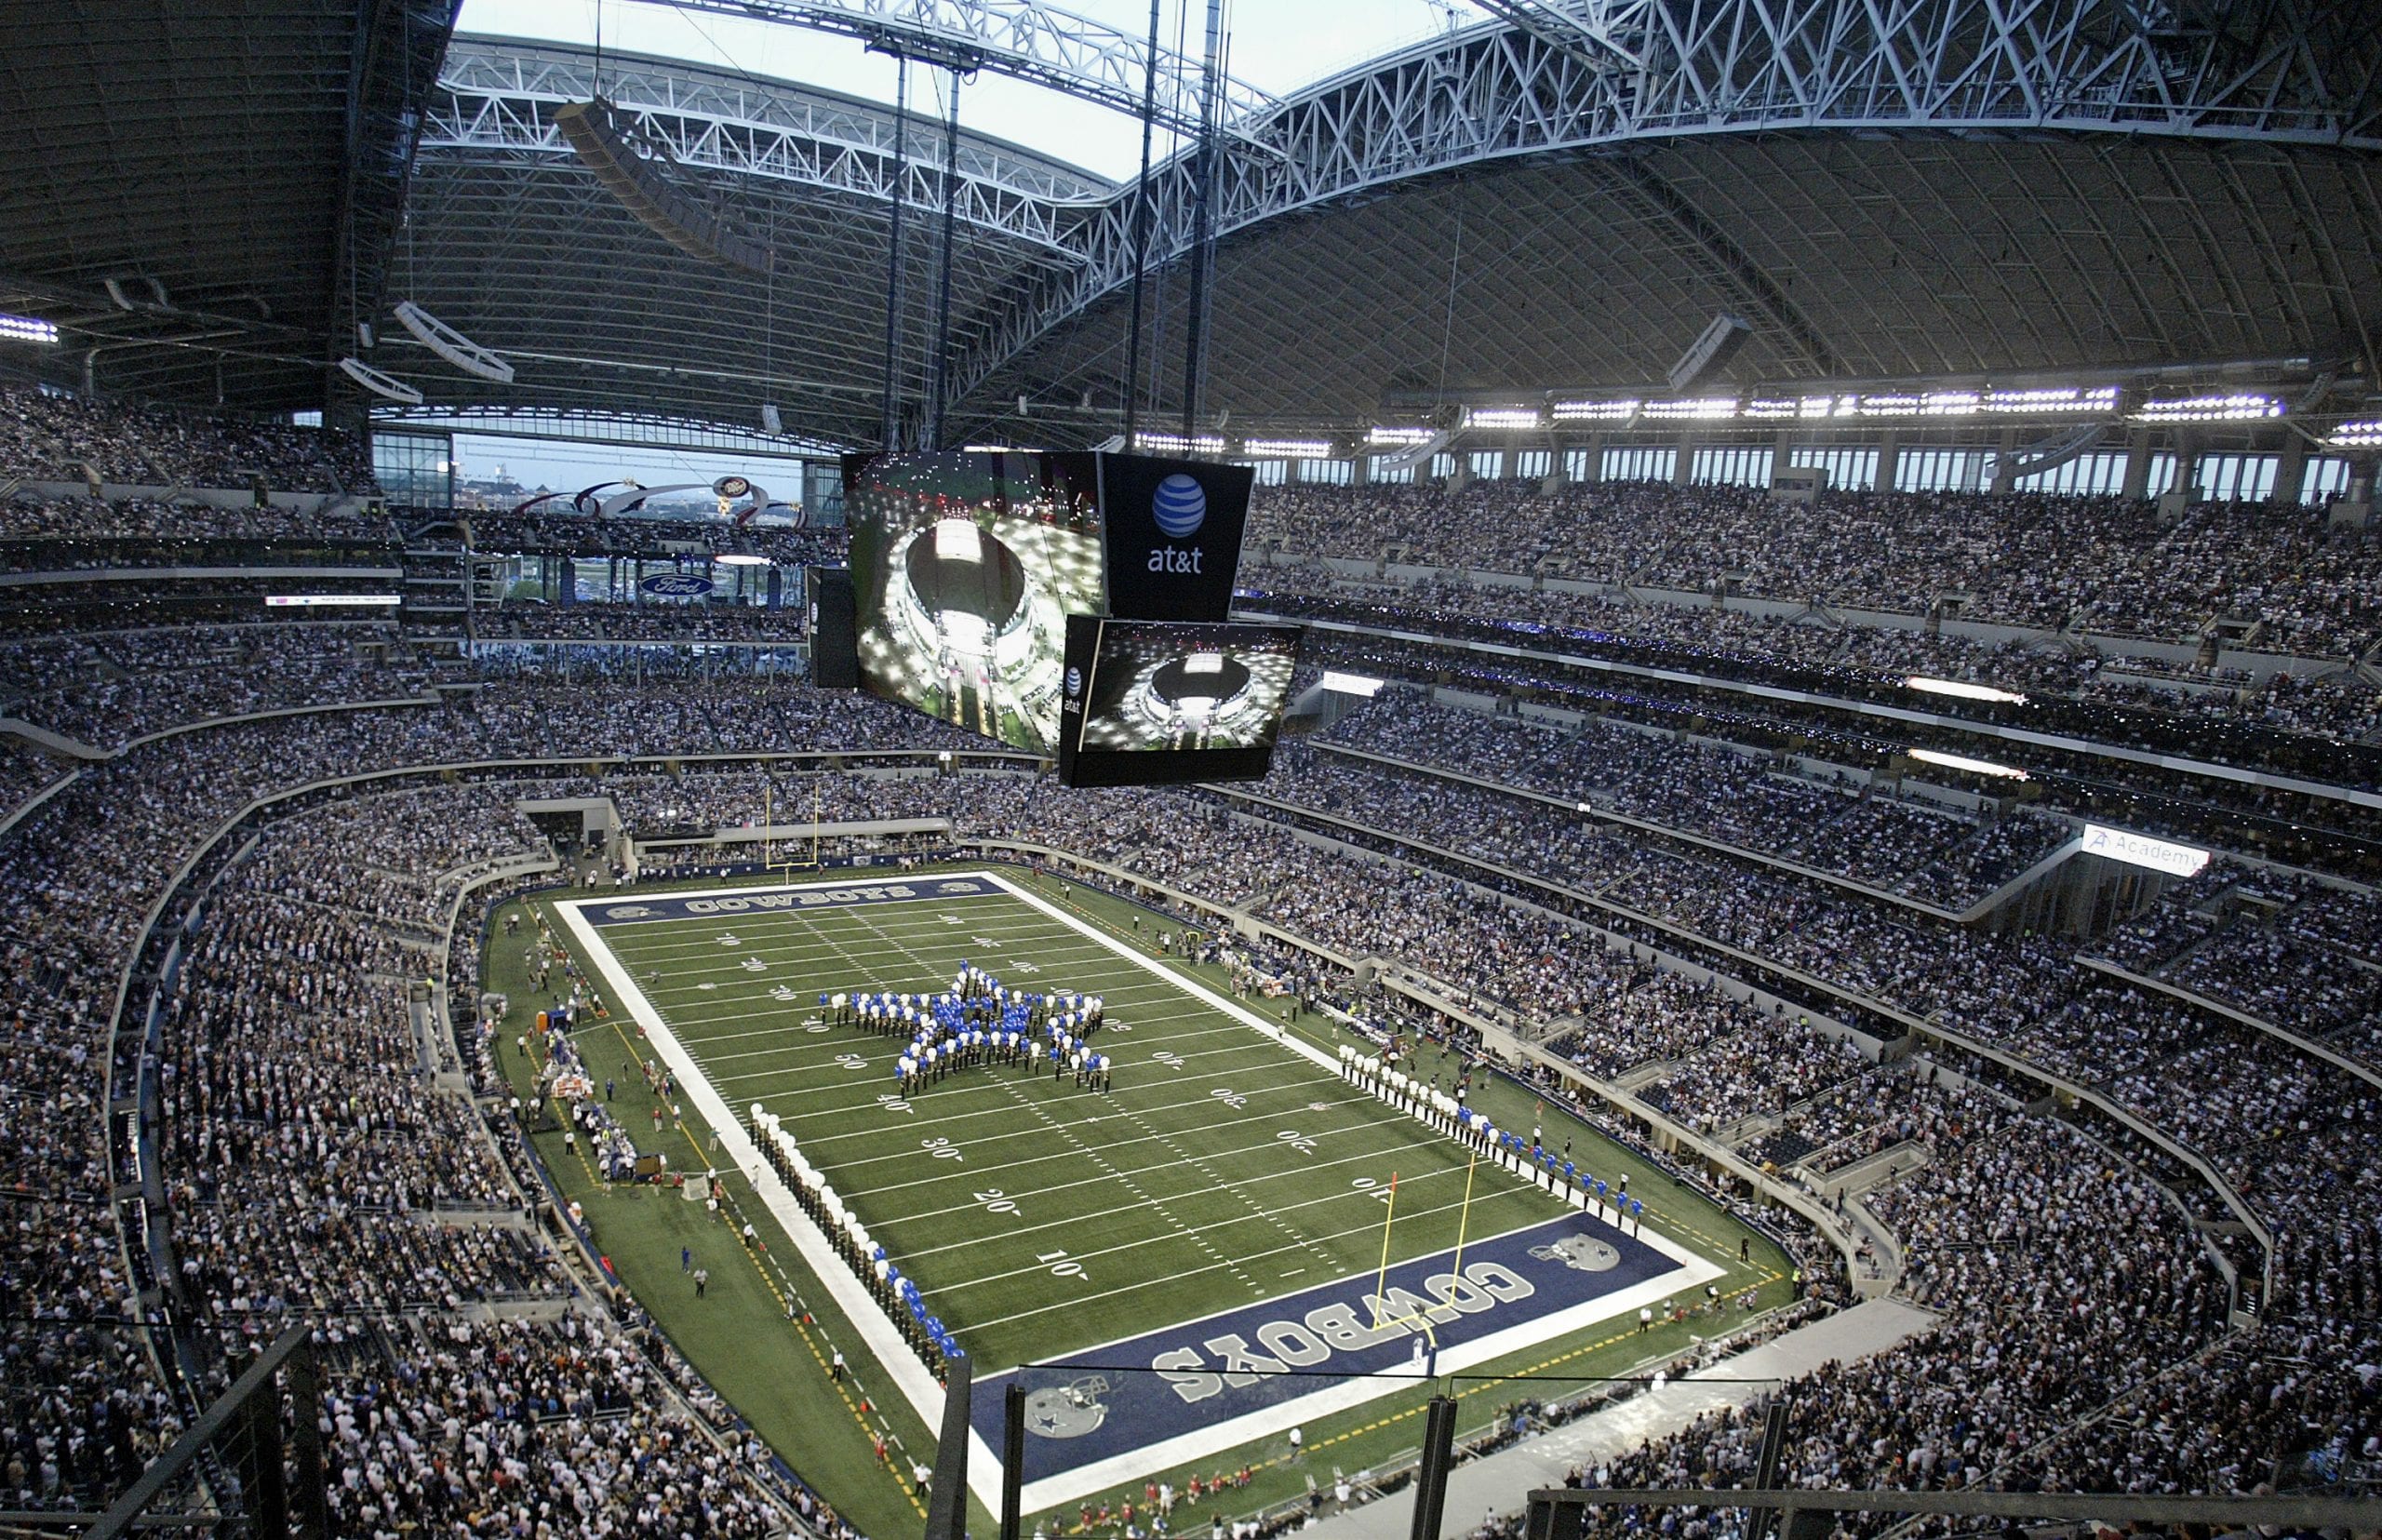 Dallas Cowboys at AT&T Stadium © James D. Smith